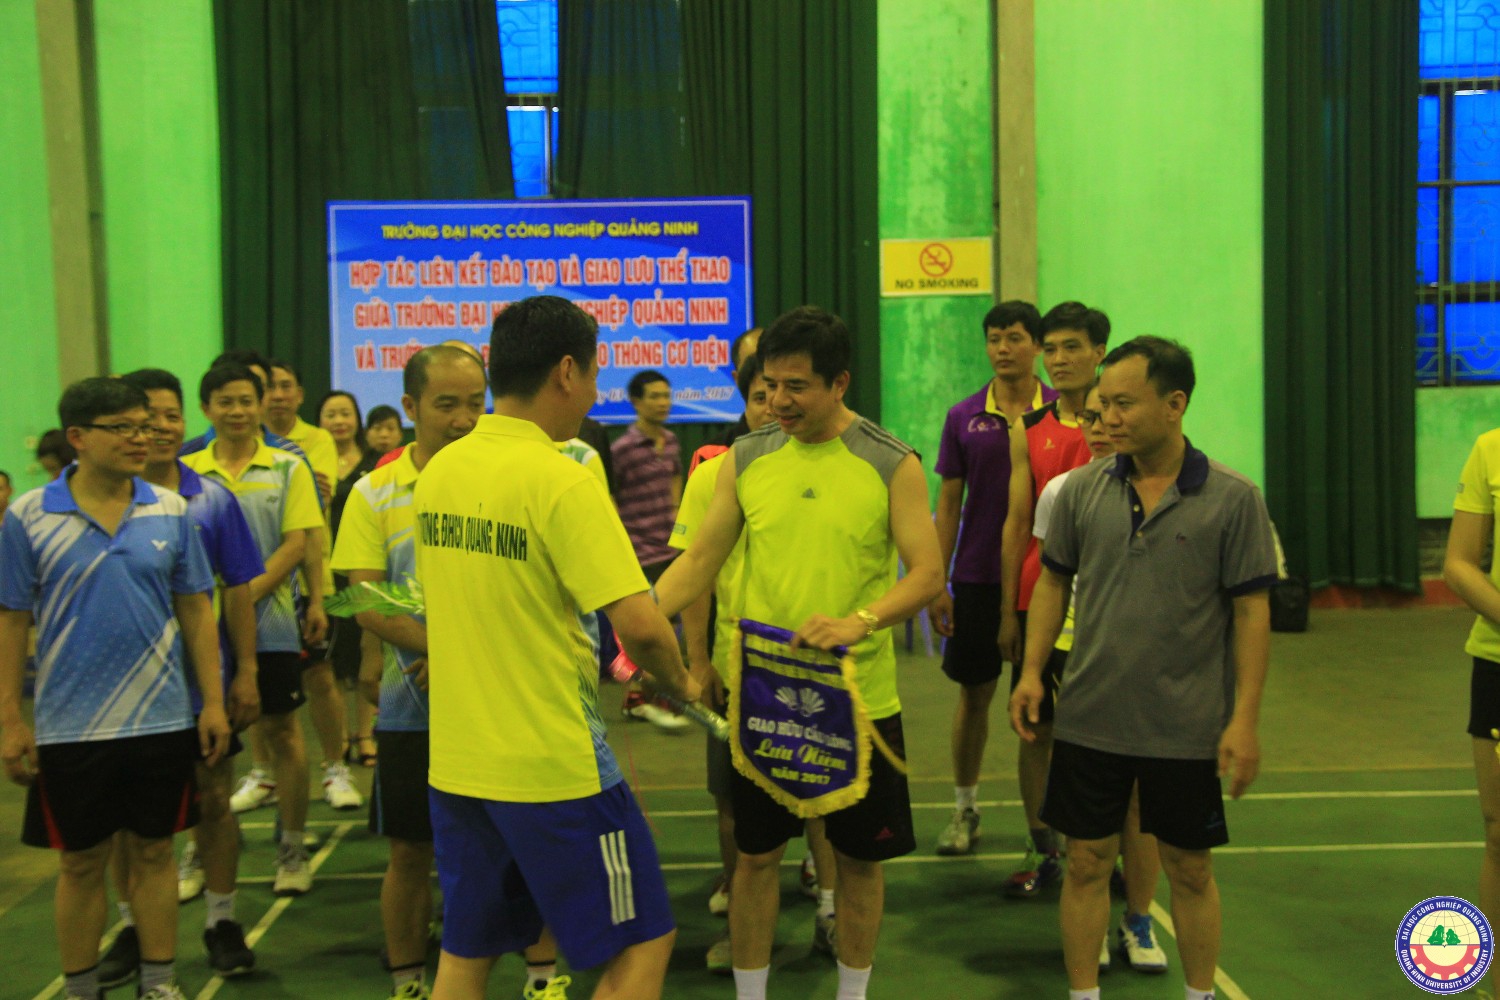 Hợp tác liên kết đào tạo và giao lưu thể thao giũa trường Đại học công nghiệp Quảng Ninh và trường cao đẳng Giao thông Cơ điện